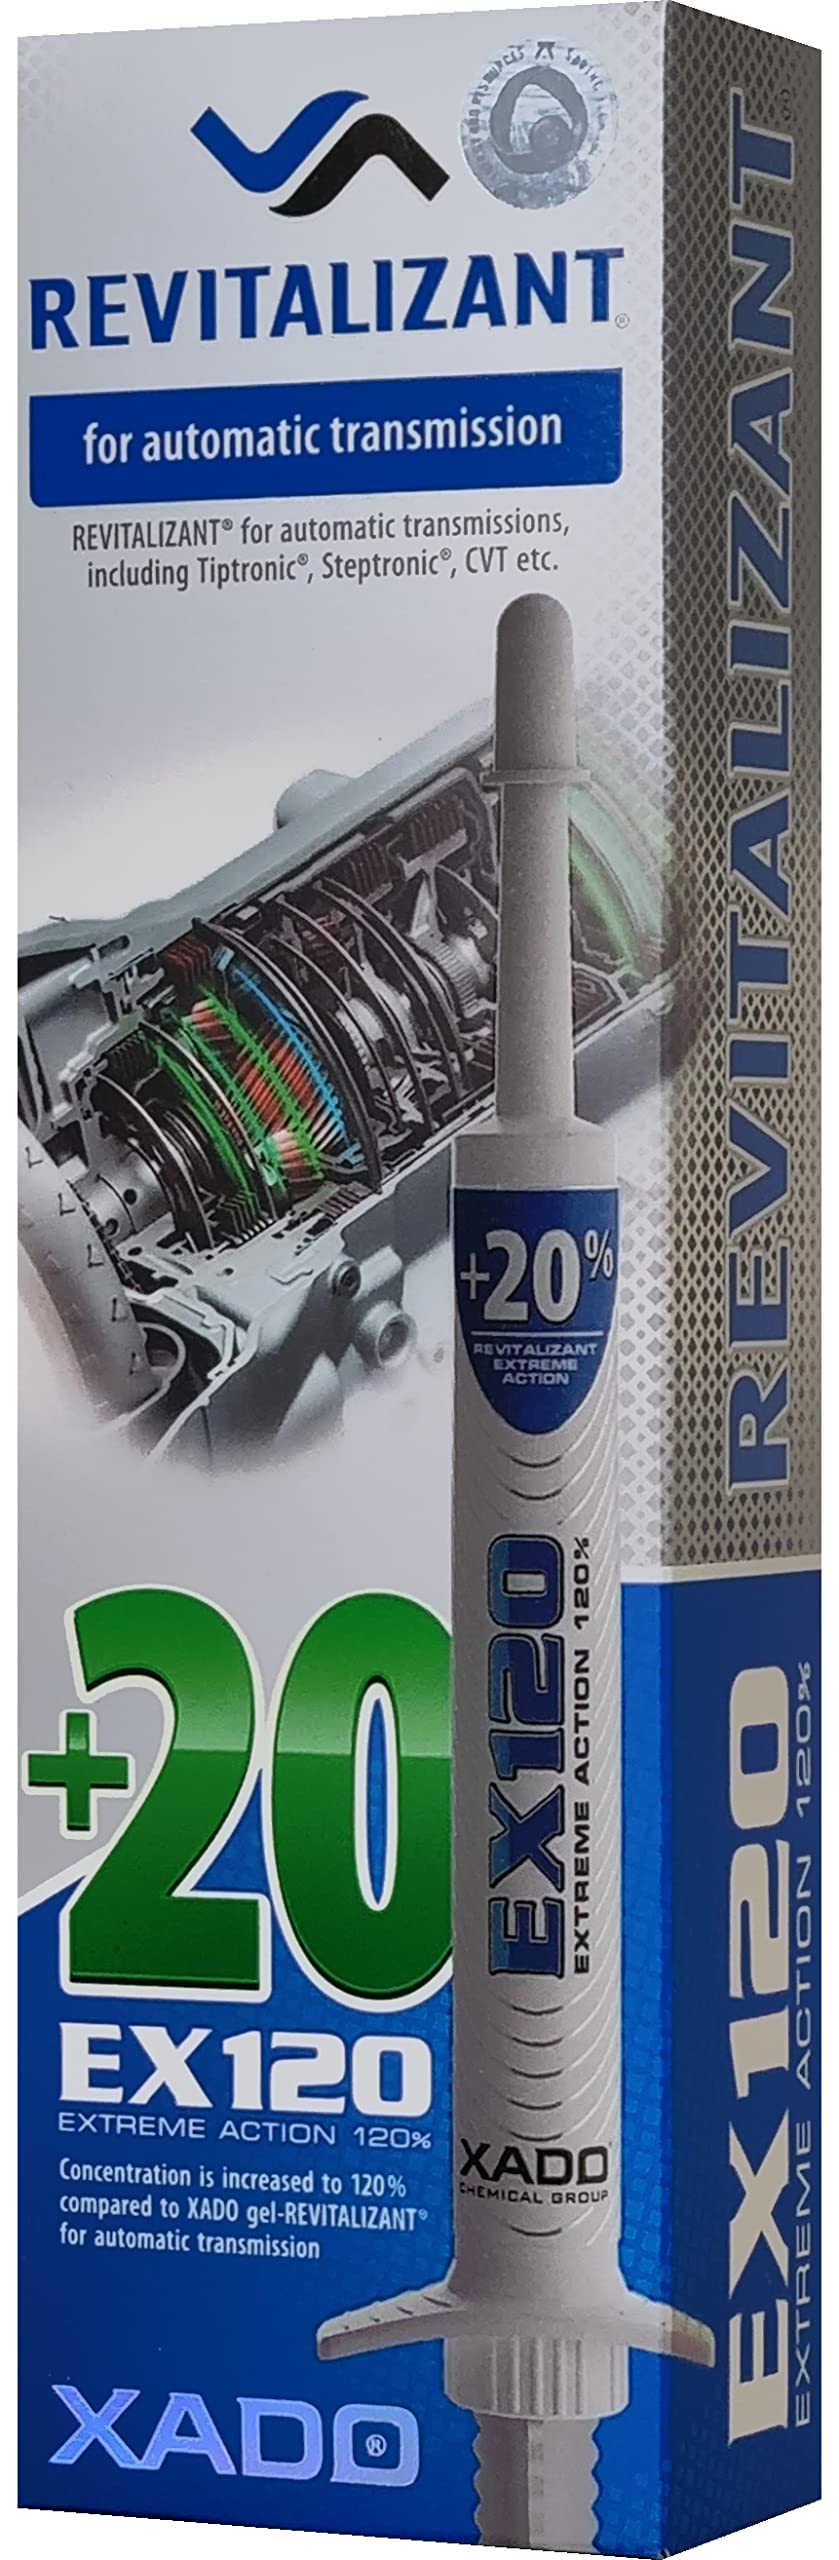 XADO EX120 Automatikgetriebe-Reparatur – Behandlung für CVT und andere Getriebetypen | ATF-Additiv und Schutzmittel – Reduziert Anhaften, Ruckeln und Rutschen von XADO